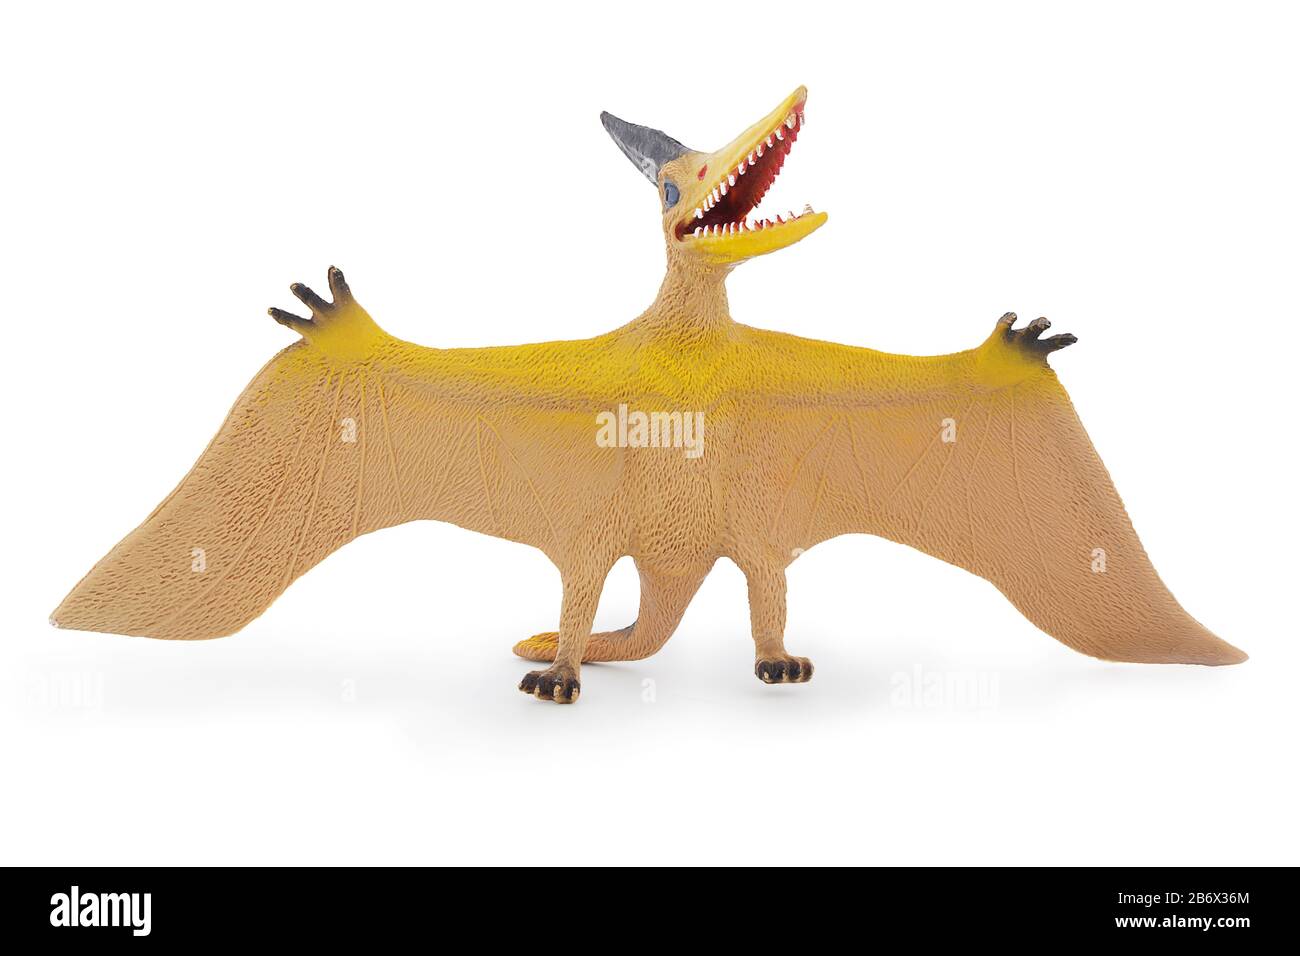 Pteranodon giocattolo, volante rettile. Isolato su sfondo bianco con ombra naturale. Lucertola volante preistorica. Foto Stock